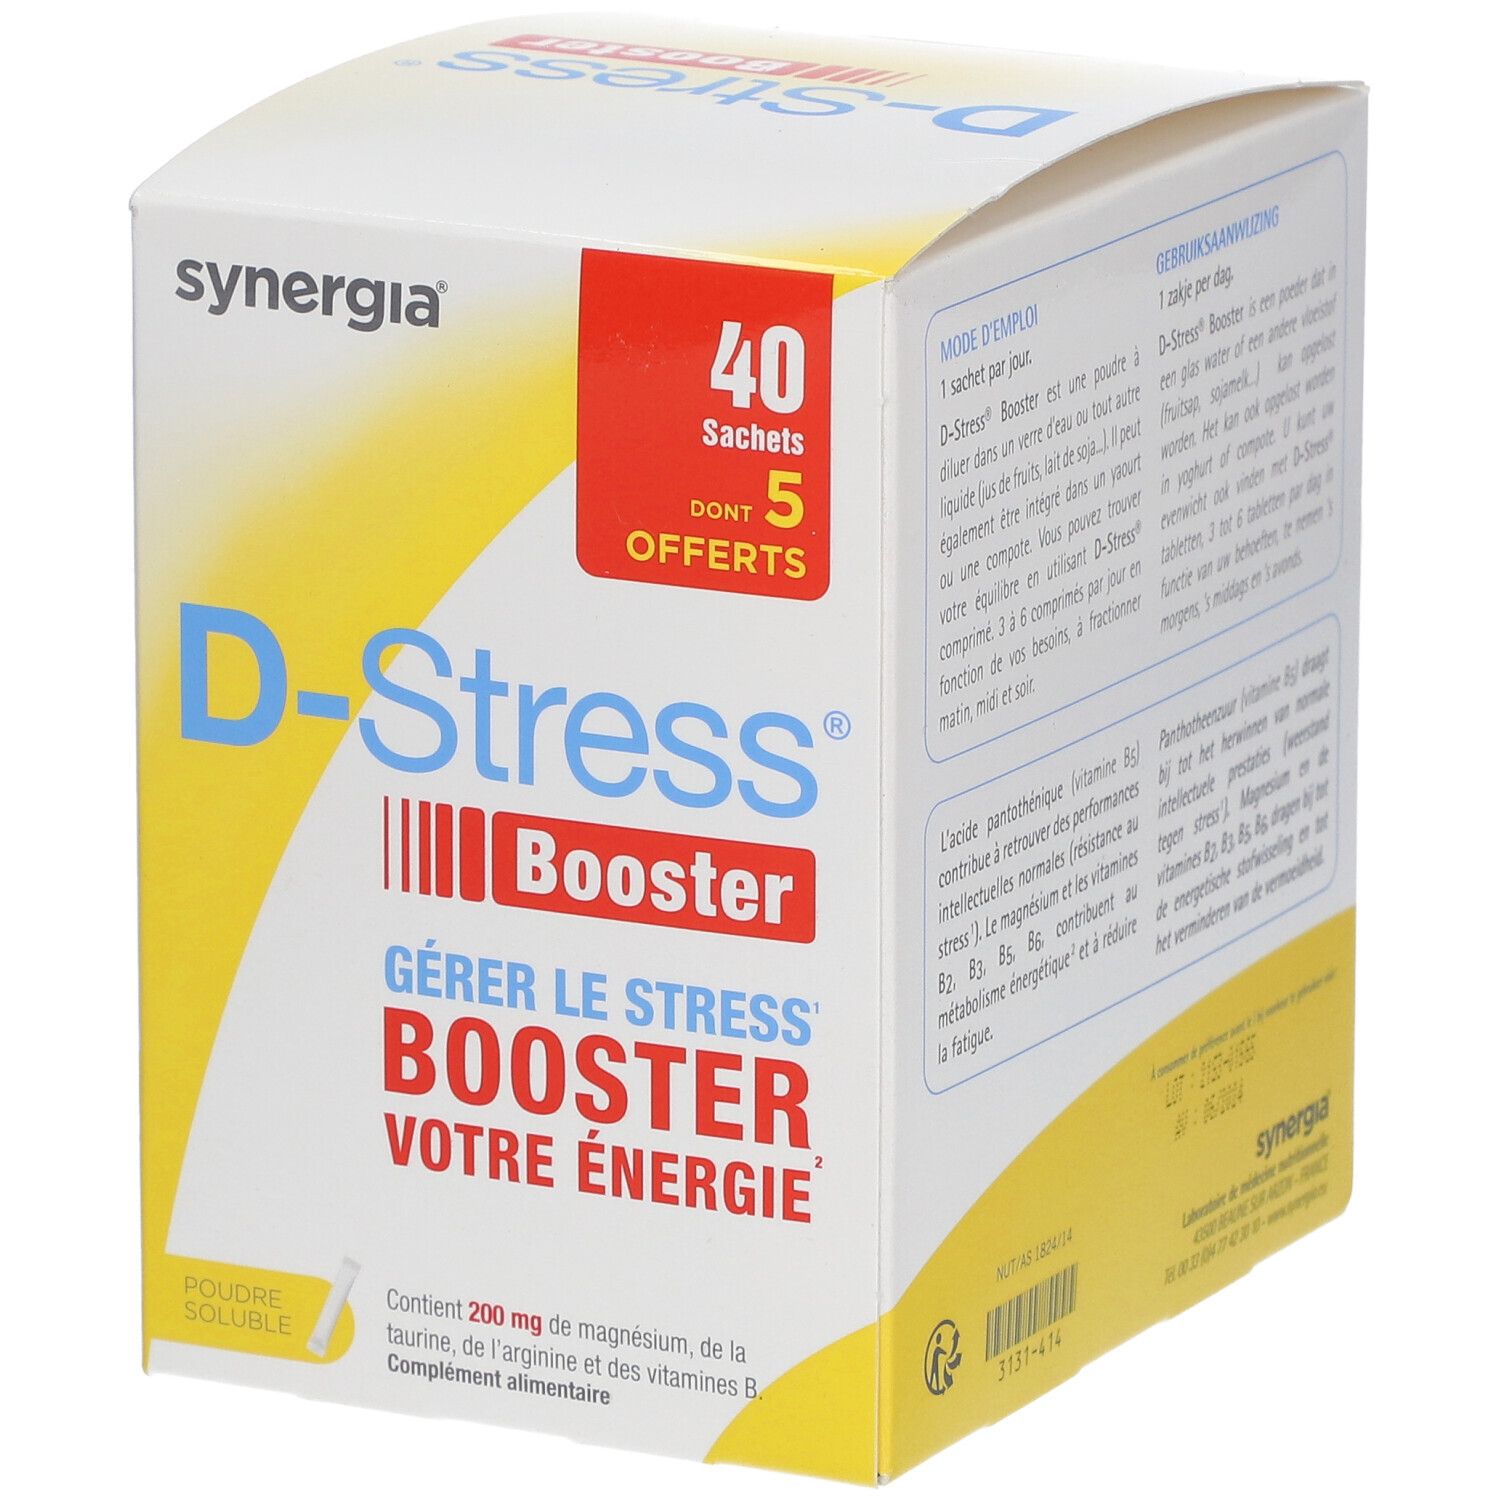 D-Stress® Booster